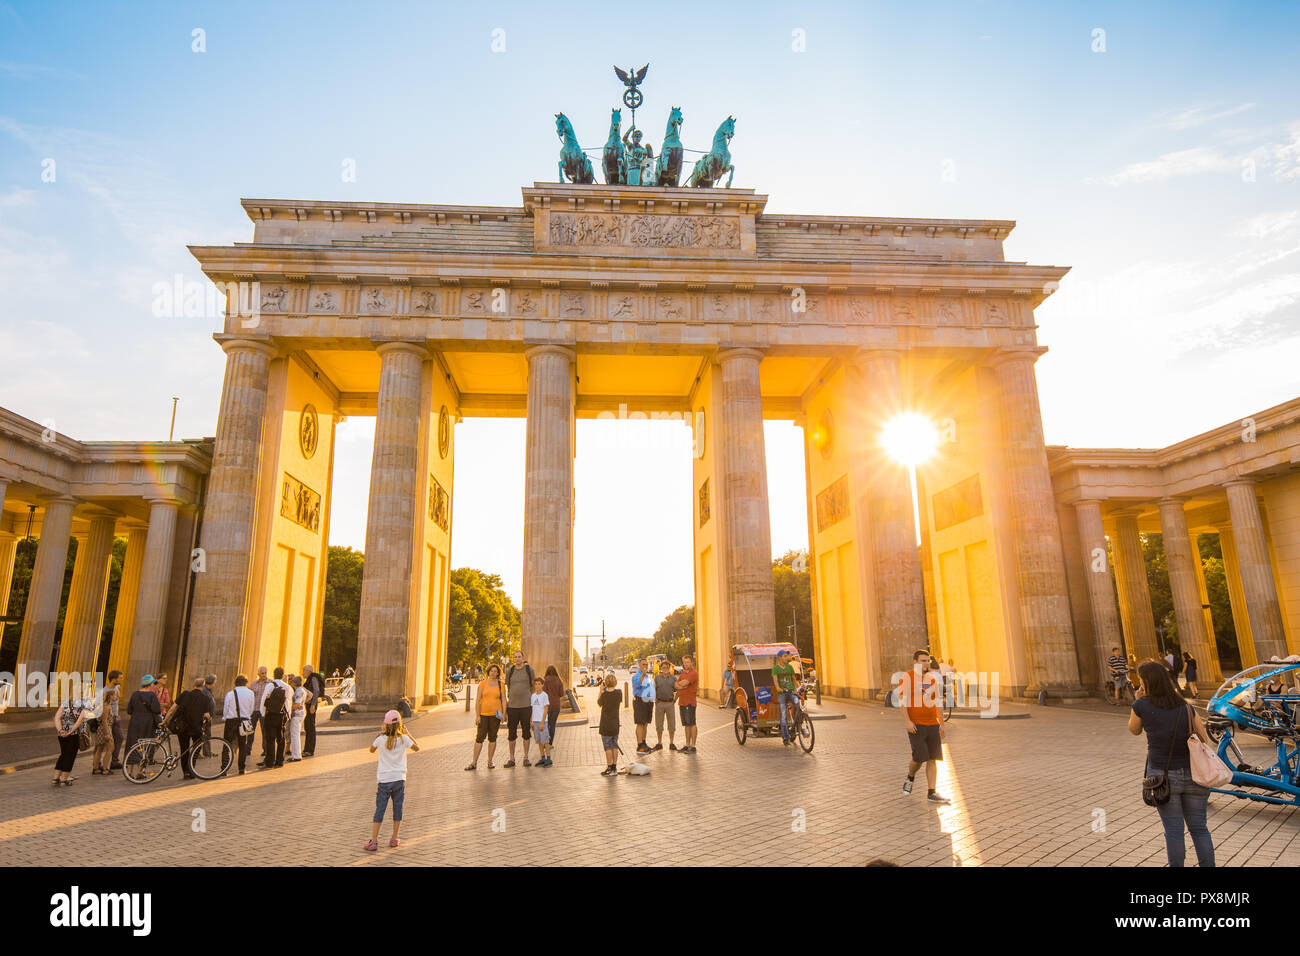 Berlino - Germania - Luglio 27, 2015: la Porta di Brandeburgo, uno dei più noti monumenti e simboli nazionali della Germania, in beautiful Golden luce della sera Foto Stock